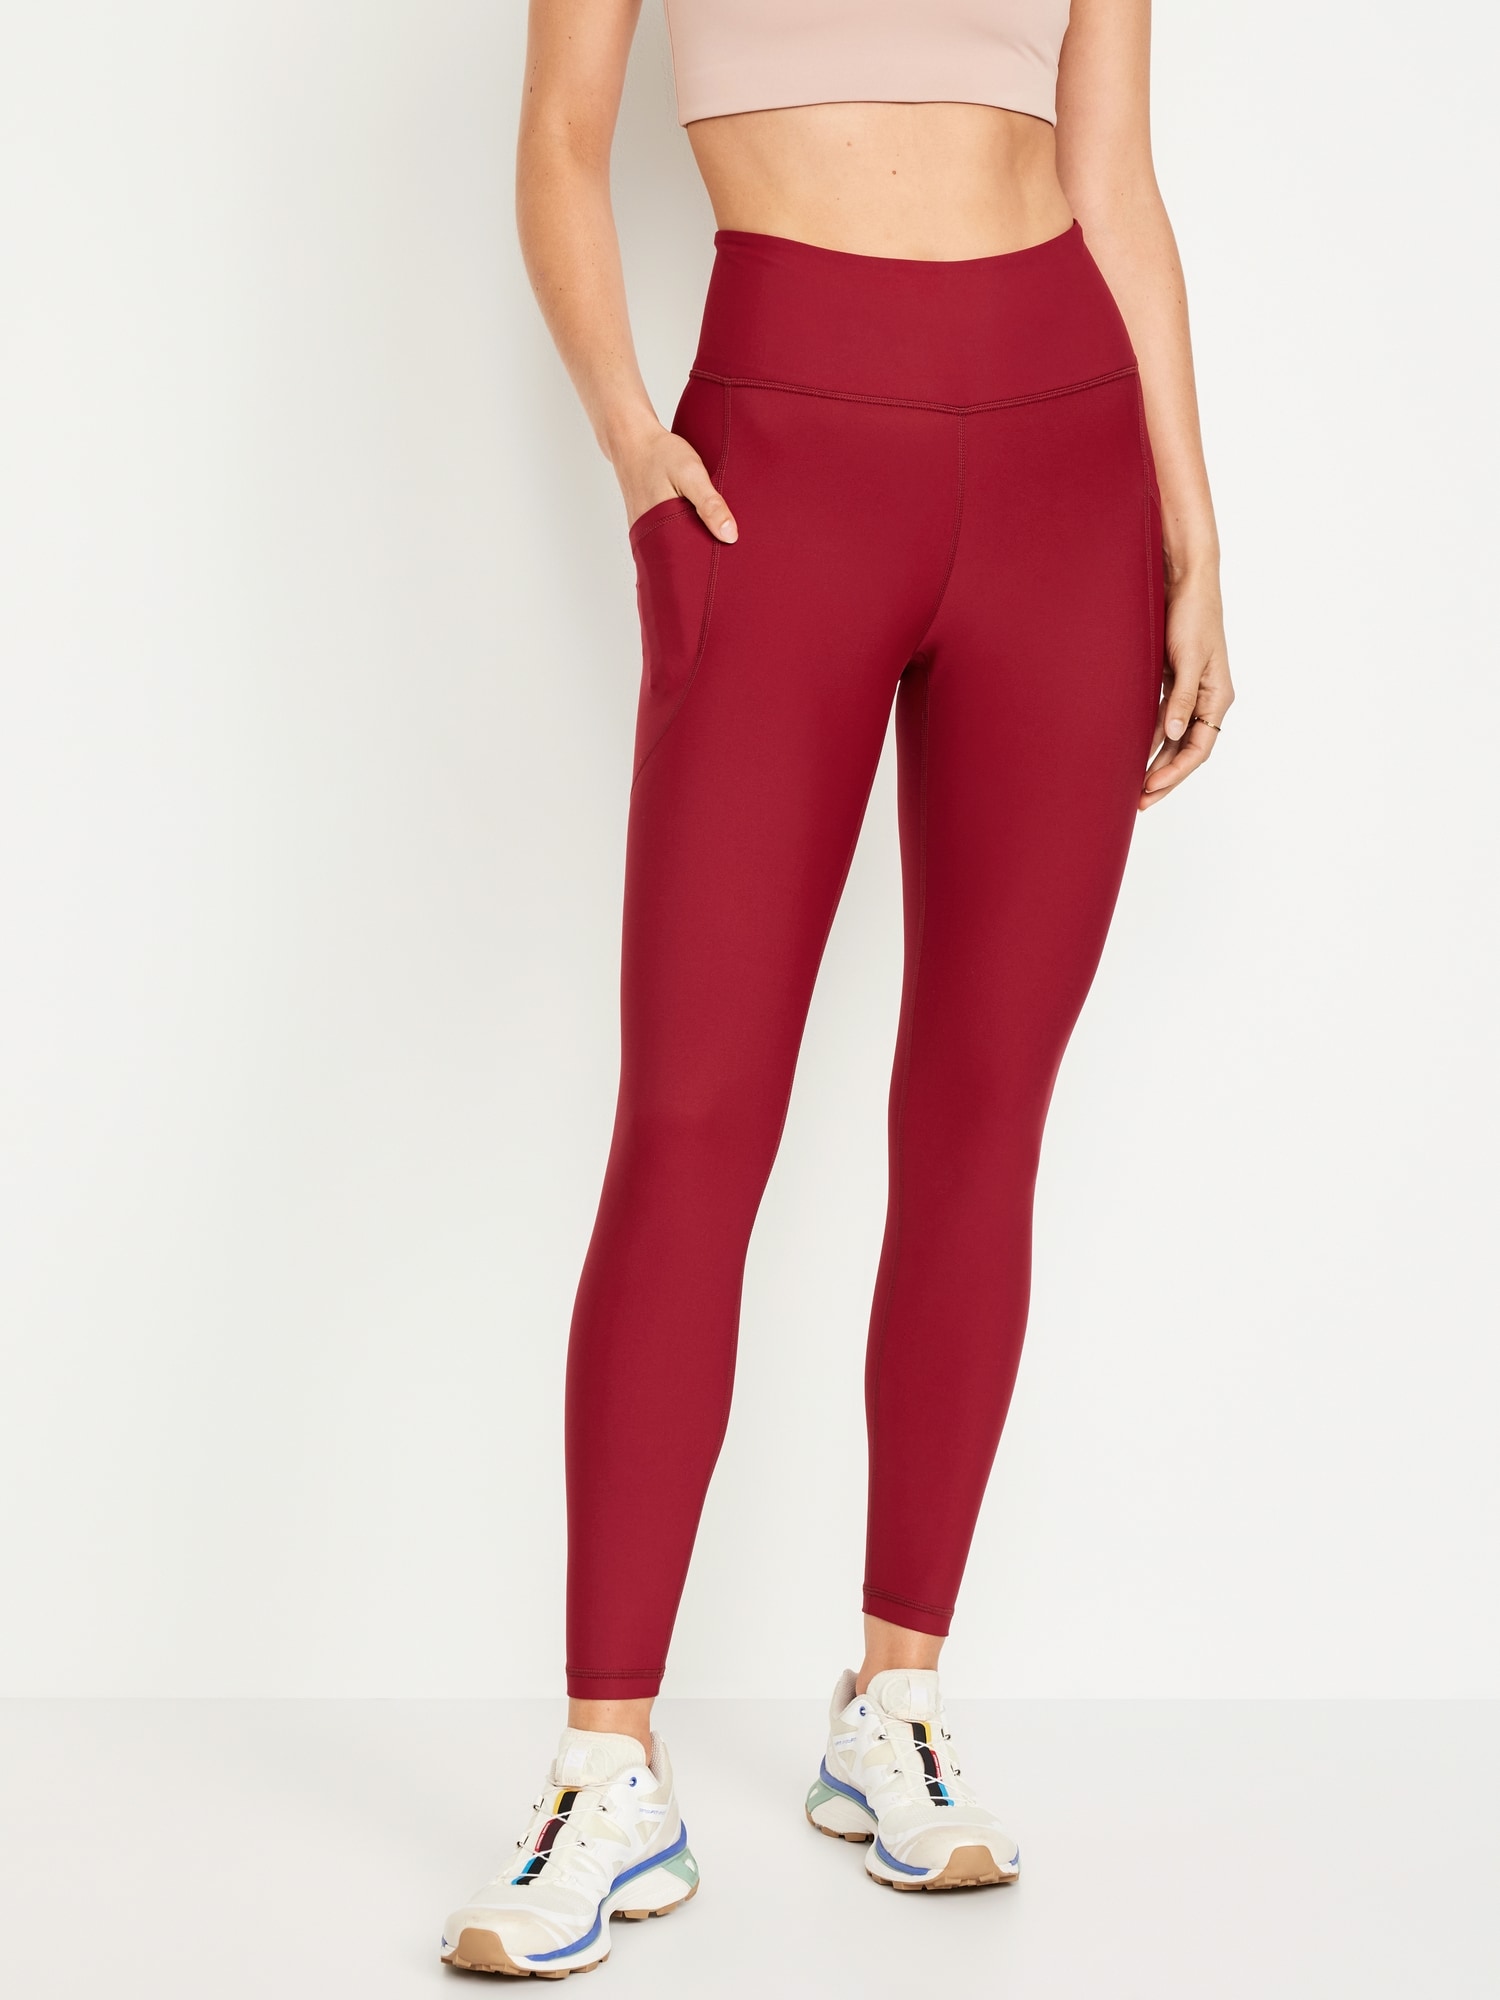 Gubotare Yoga Pants For Women Women's High Rise Tie Dye Leggings  Full-Length Yoga Pants,Red L 